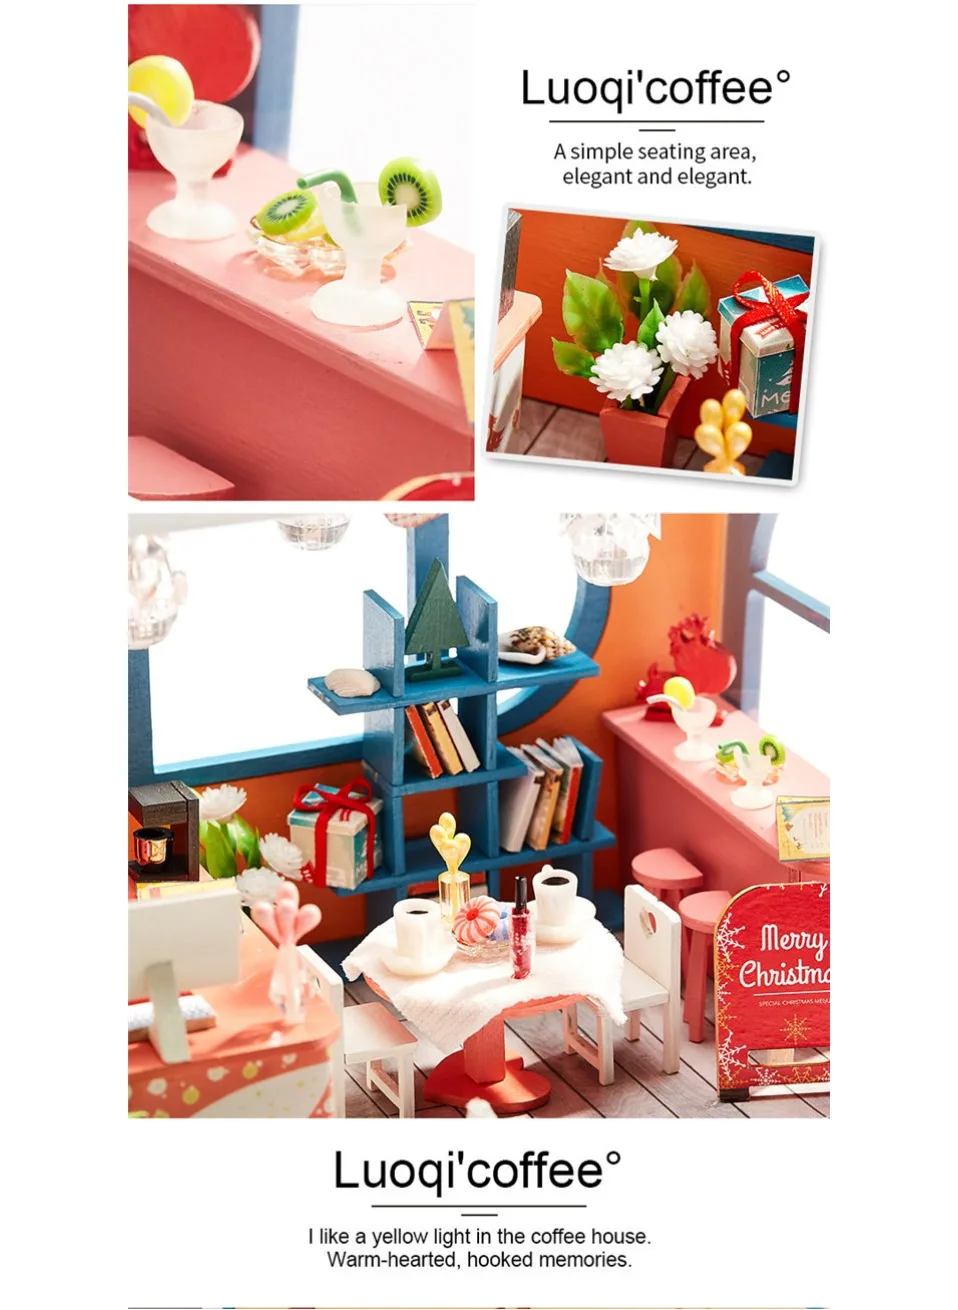 Diy кукольный домик Рождественский миниатюрный деревянный сборный 3D Миниатюрный Кукольный дом наборы игрушек для детей подарок на день рождения casetta legno